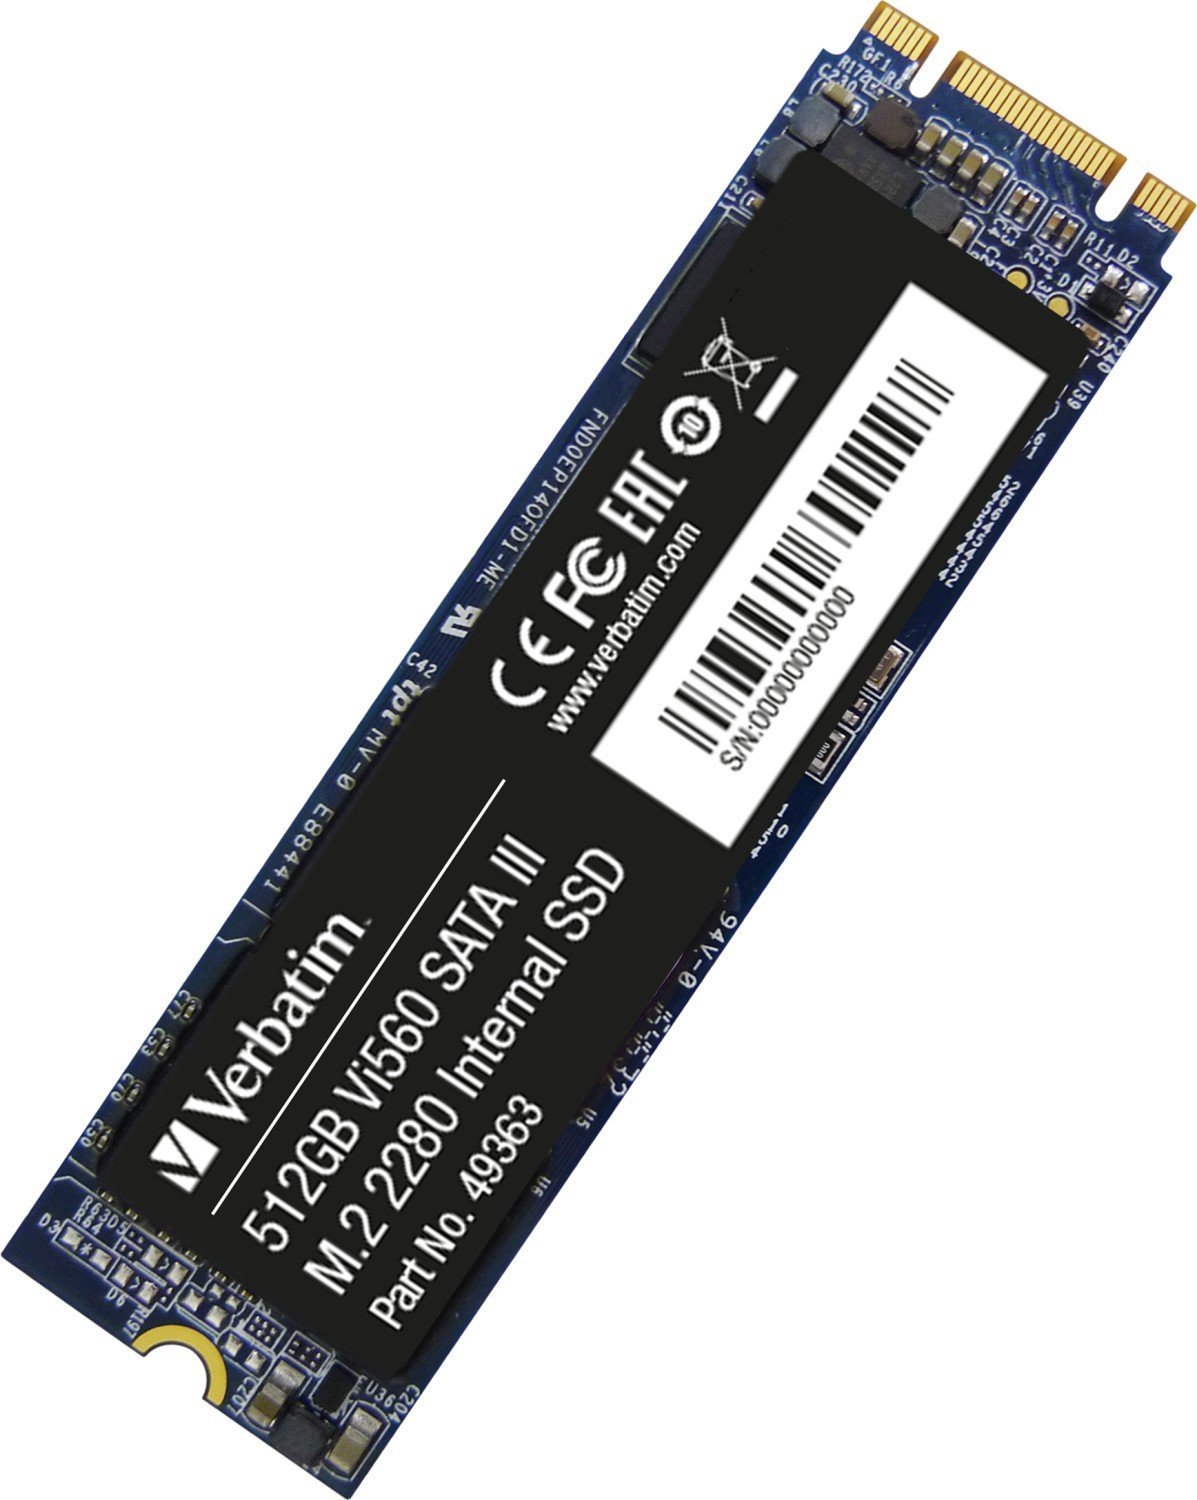 Solid-State Drive (SSD) - Solid State Drive SSD Verbatim Vi560, 512 GB, M.2 22110, SATA III